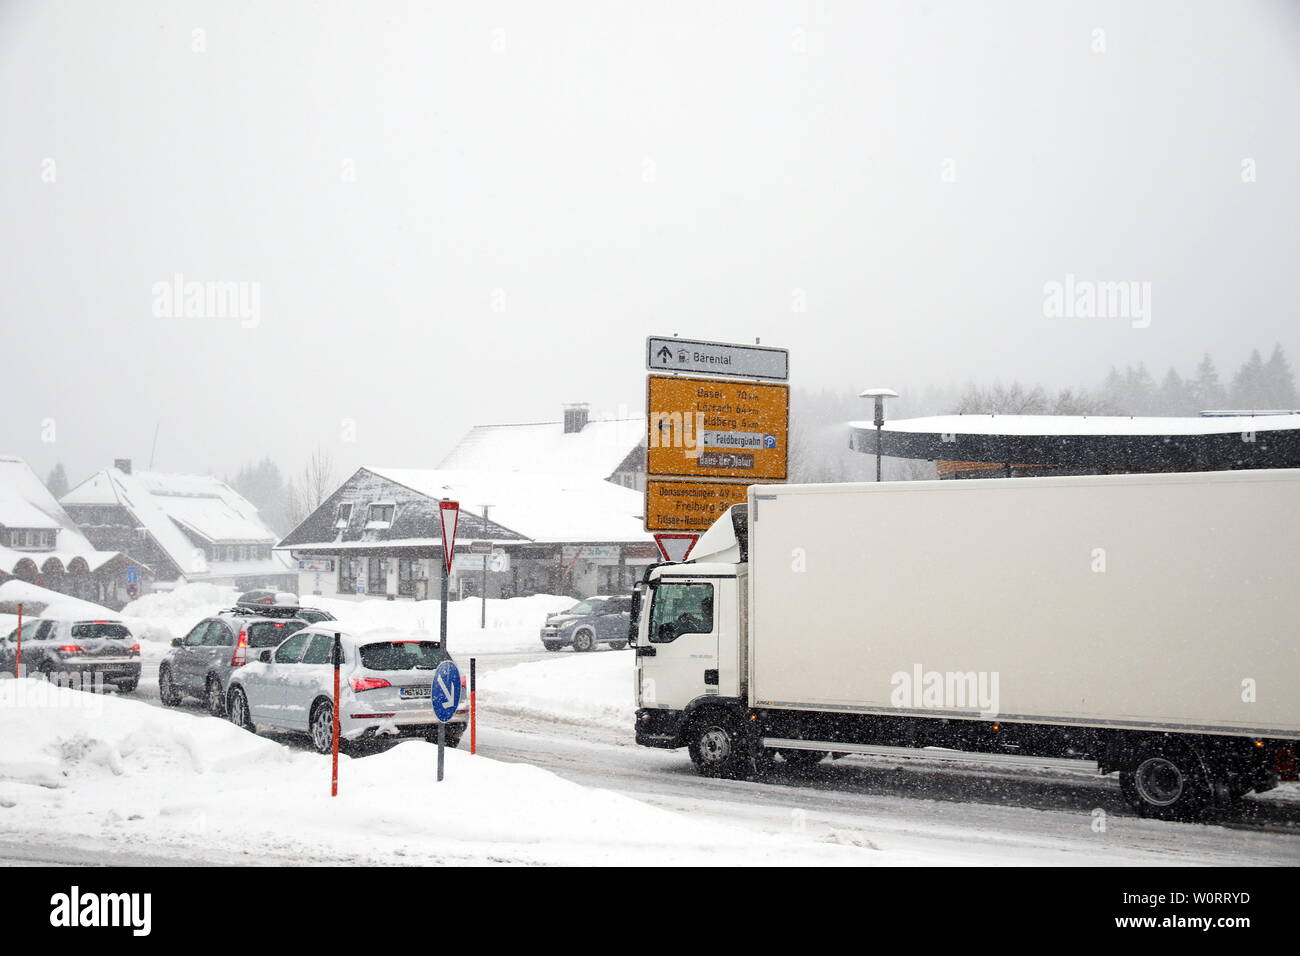 Wintereinbruch im Hochschwarzwald (Baden-Württemberg) - in der Feldbergregion ist der Winter mit kräftigen Schneeschauern zurückgekehrt. Wie hier in Feldberg-Bärental kommt es nach massiven Schneefällen am Samstagvormittag zu erheblichen Verkehrsproblemen. Räumfahrzeuge sind im Einsatz, doch sterben sterben Räumarbeiten steckengebliebenen Autofahrer verhindern. Busse mussten Schneeketten montieren, querstehende LKW mit glatten Reifen taten ihr Übriges. Stockfoto